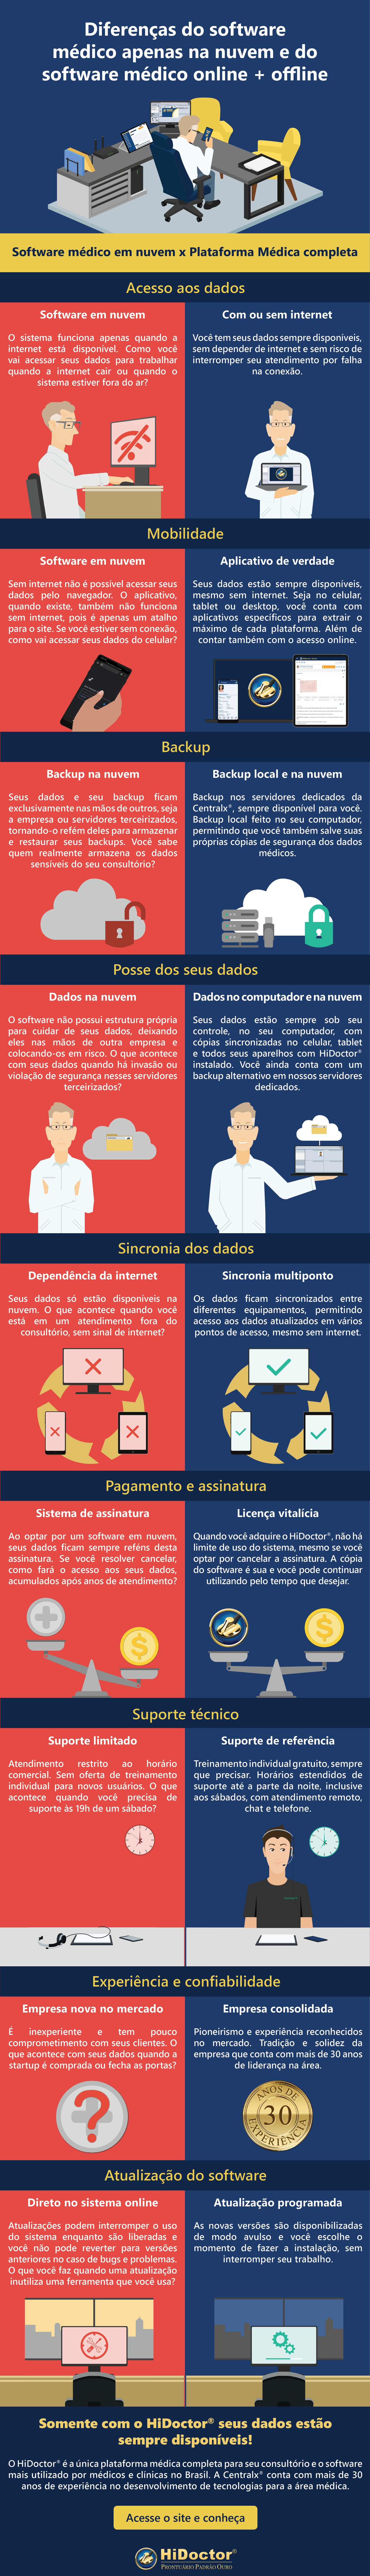 [INFOGRÁFICO] Diferenças do software médico apenas na nuvem e do software médico online + offline